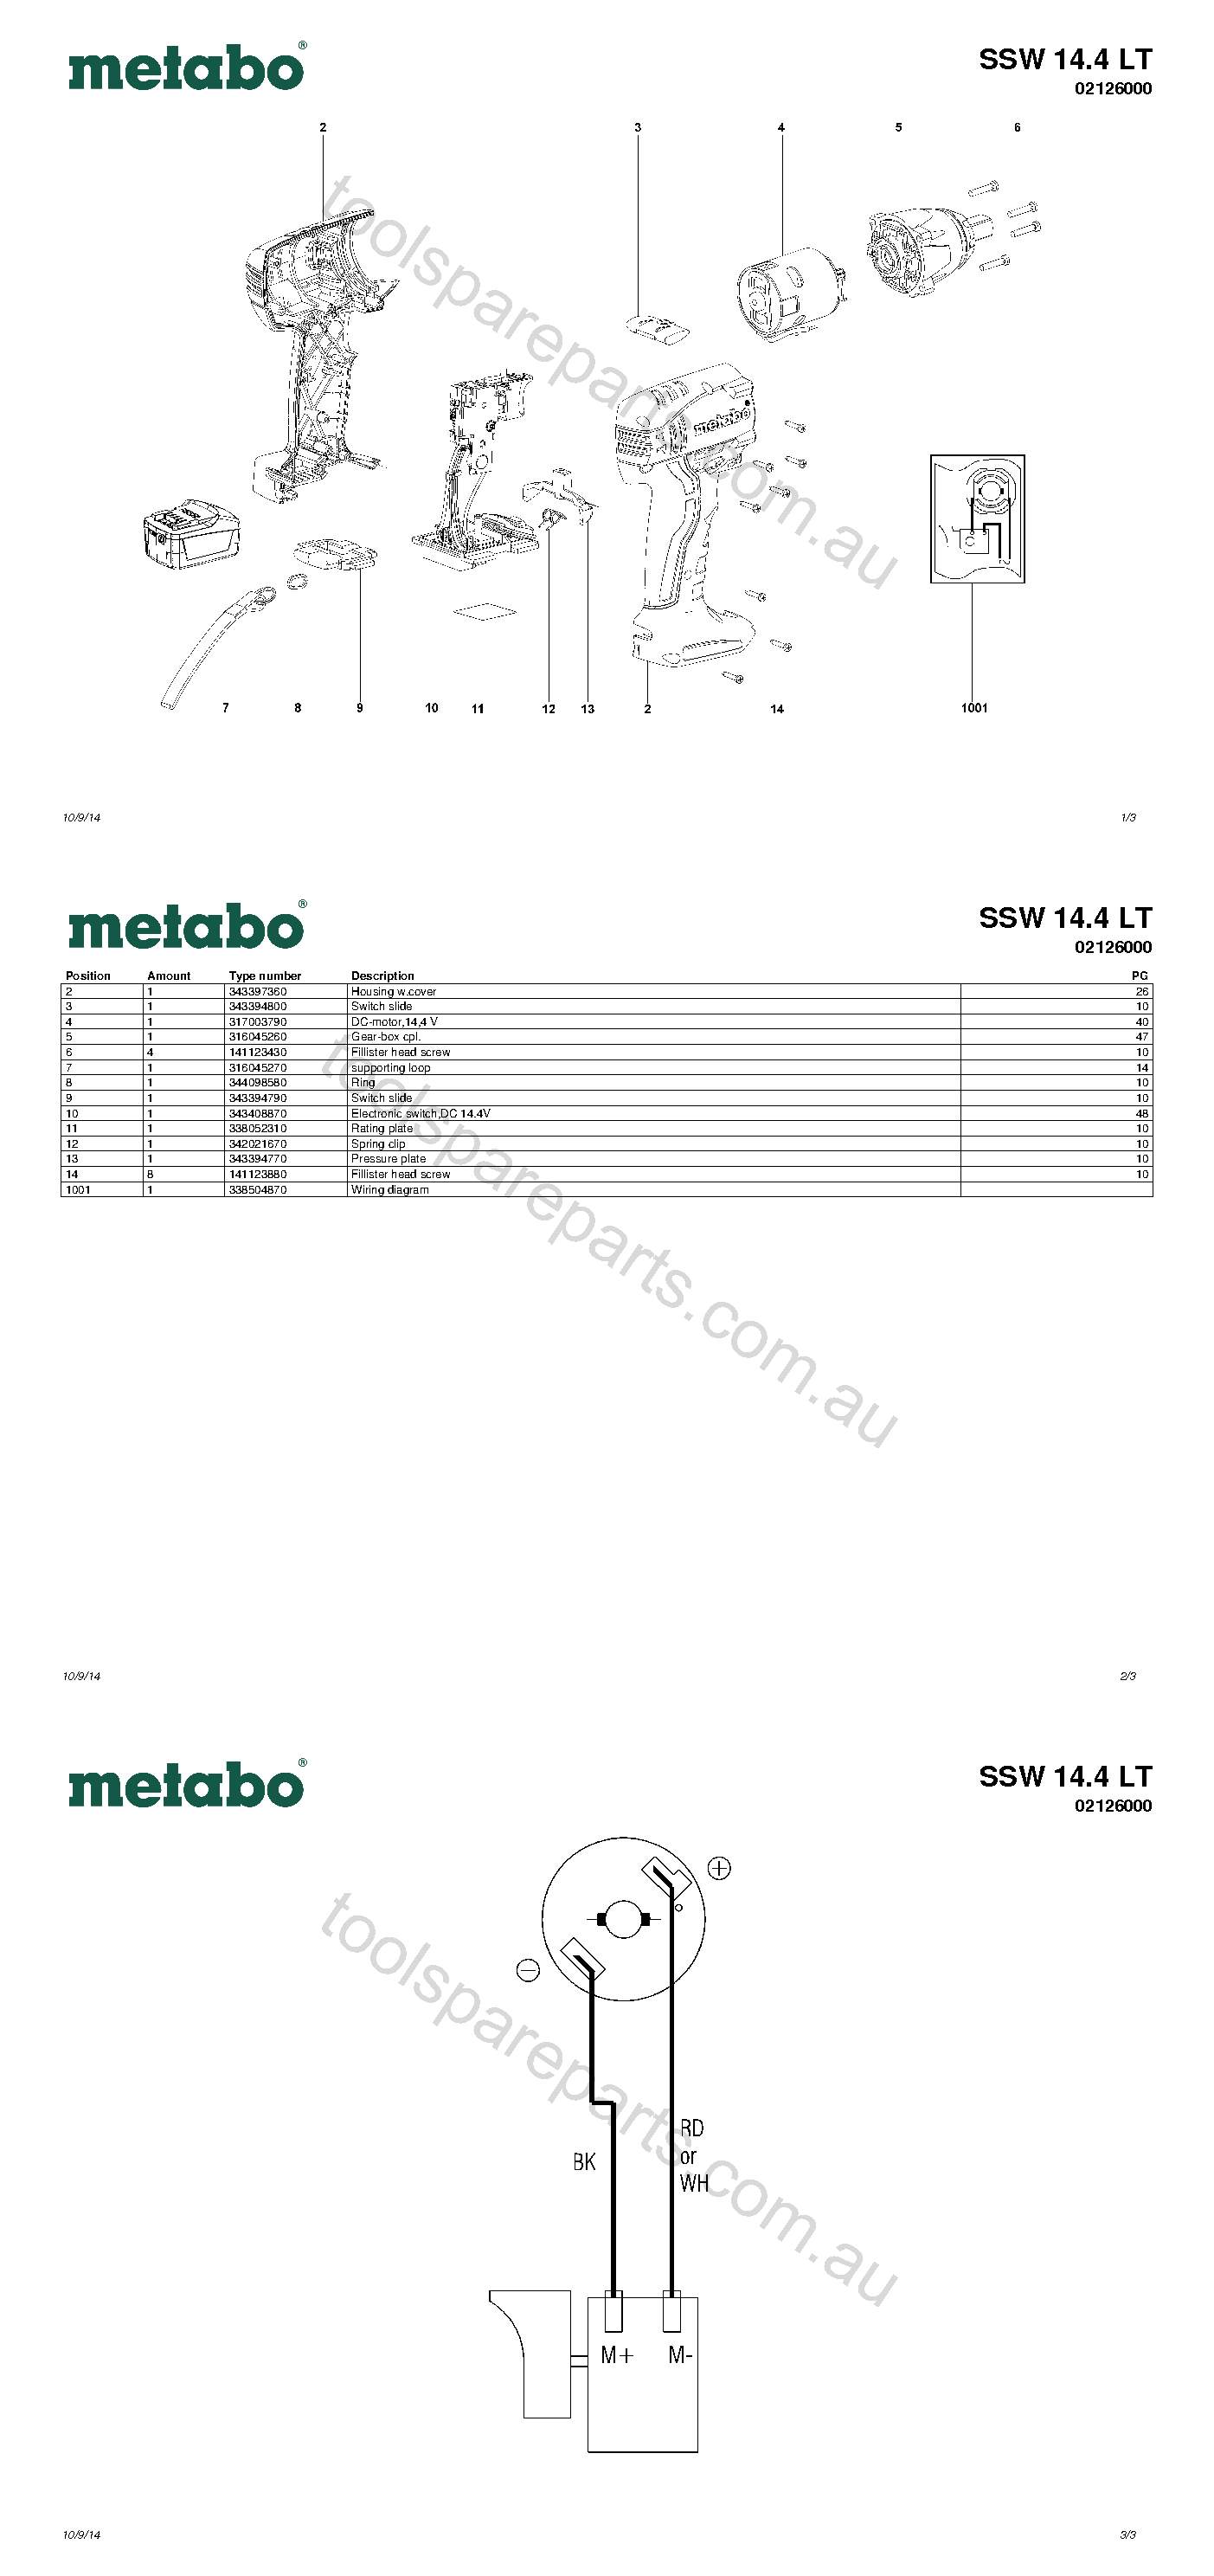 Metabo SSW 14.4 LT 02126000  Diagram 1